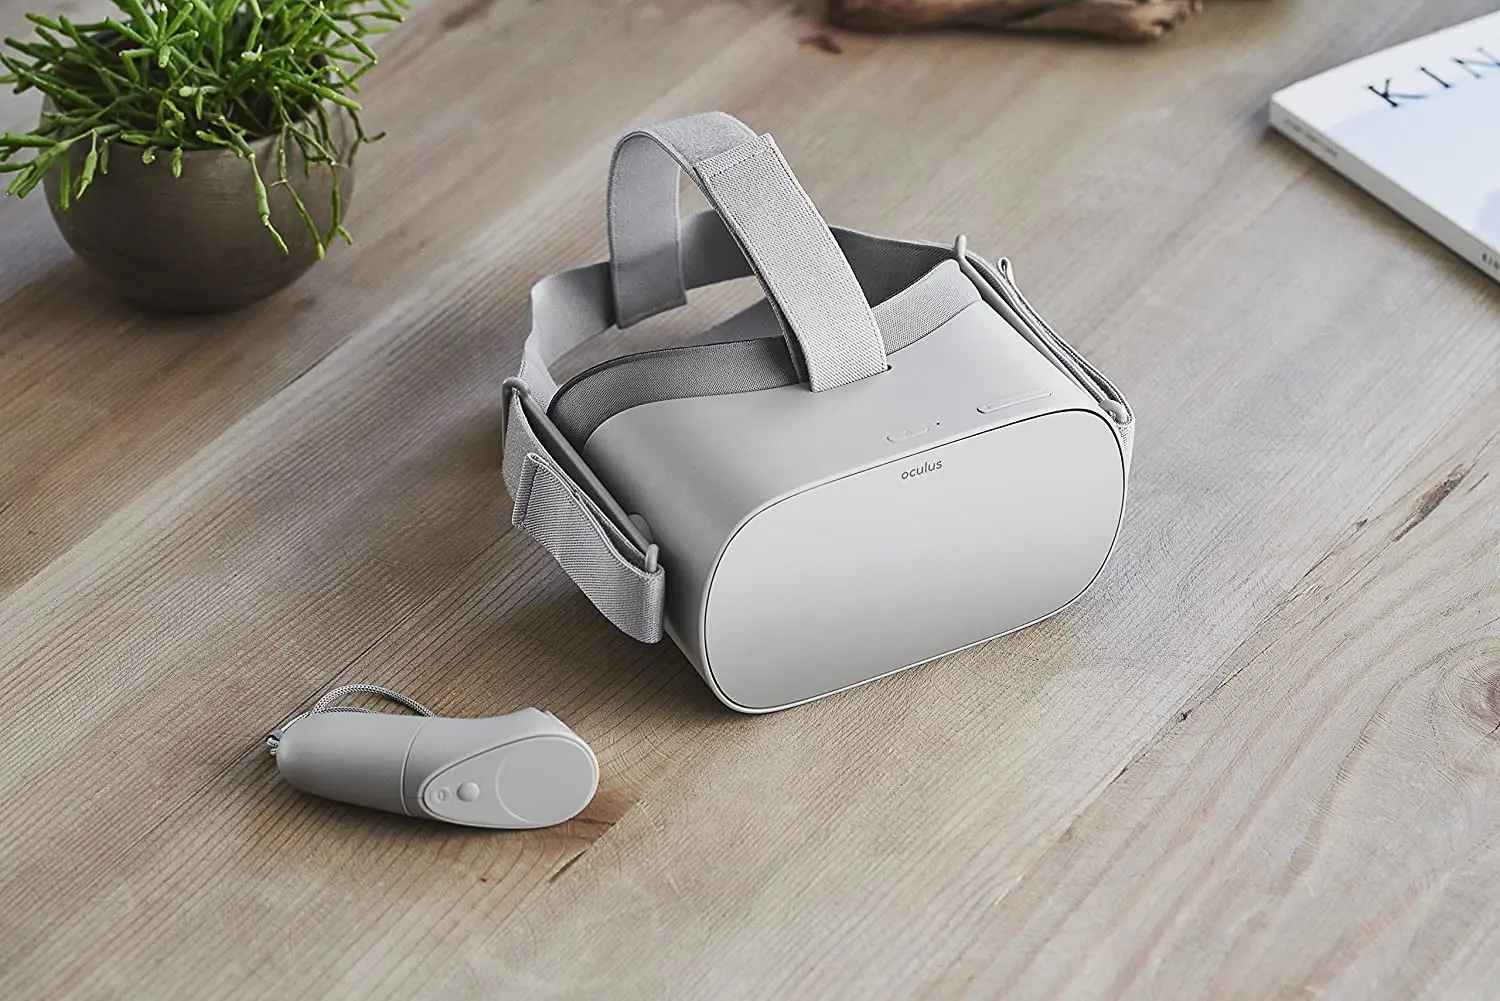 Tanie Original Oculus Go Standalone Virtual Reality Headset 32GB Wifi with 72Hz Display sklep